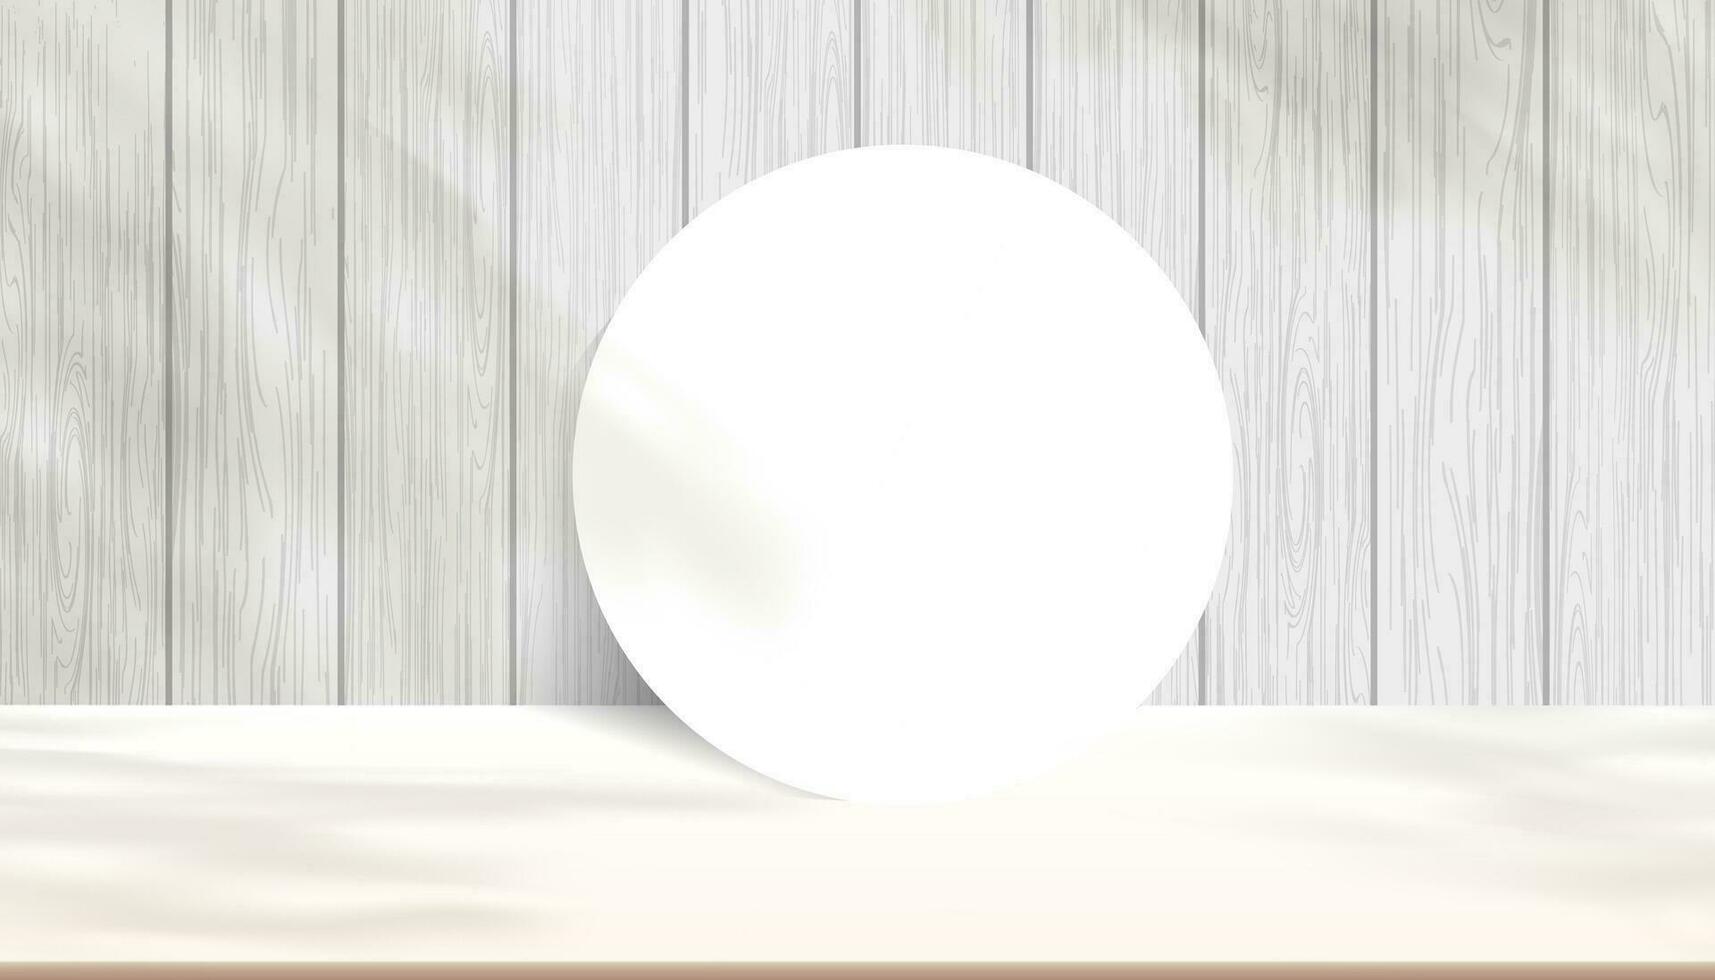 Contexte studio bois mur avec ombre feuilles sur beige sol, arrière-plan scène produit afficher podium avec ombre plateforme, blanc en bois texture avec supporter étape vitrine à spectacle cosmétique produit vecteur